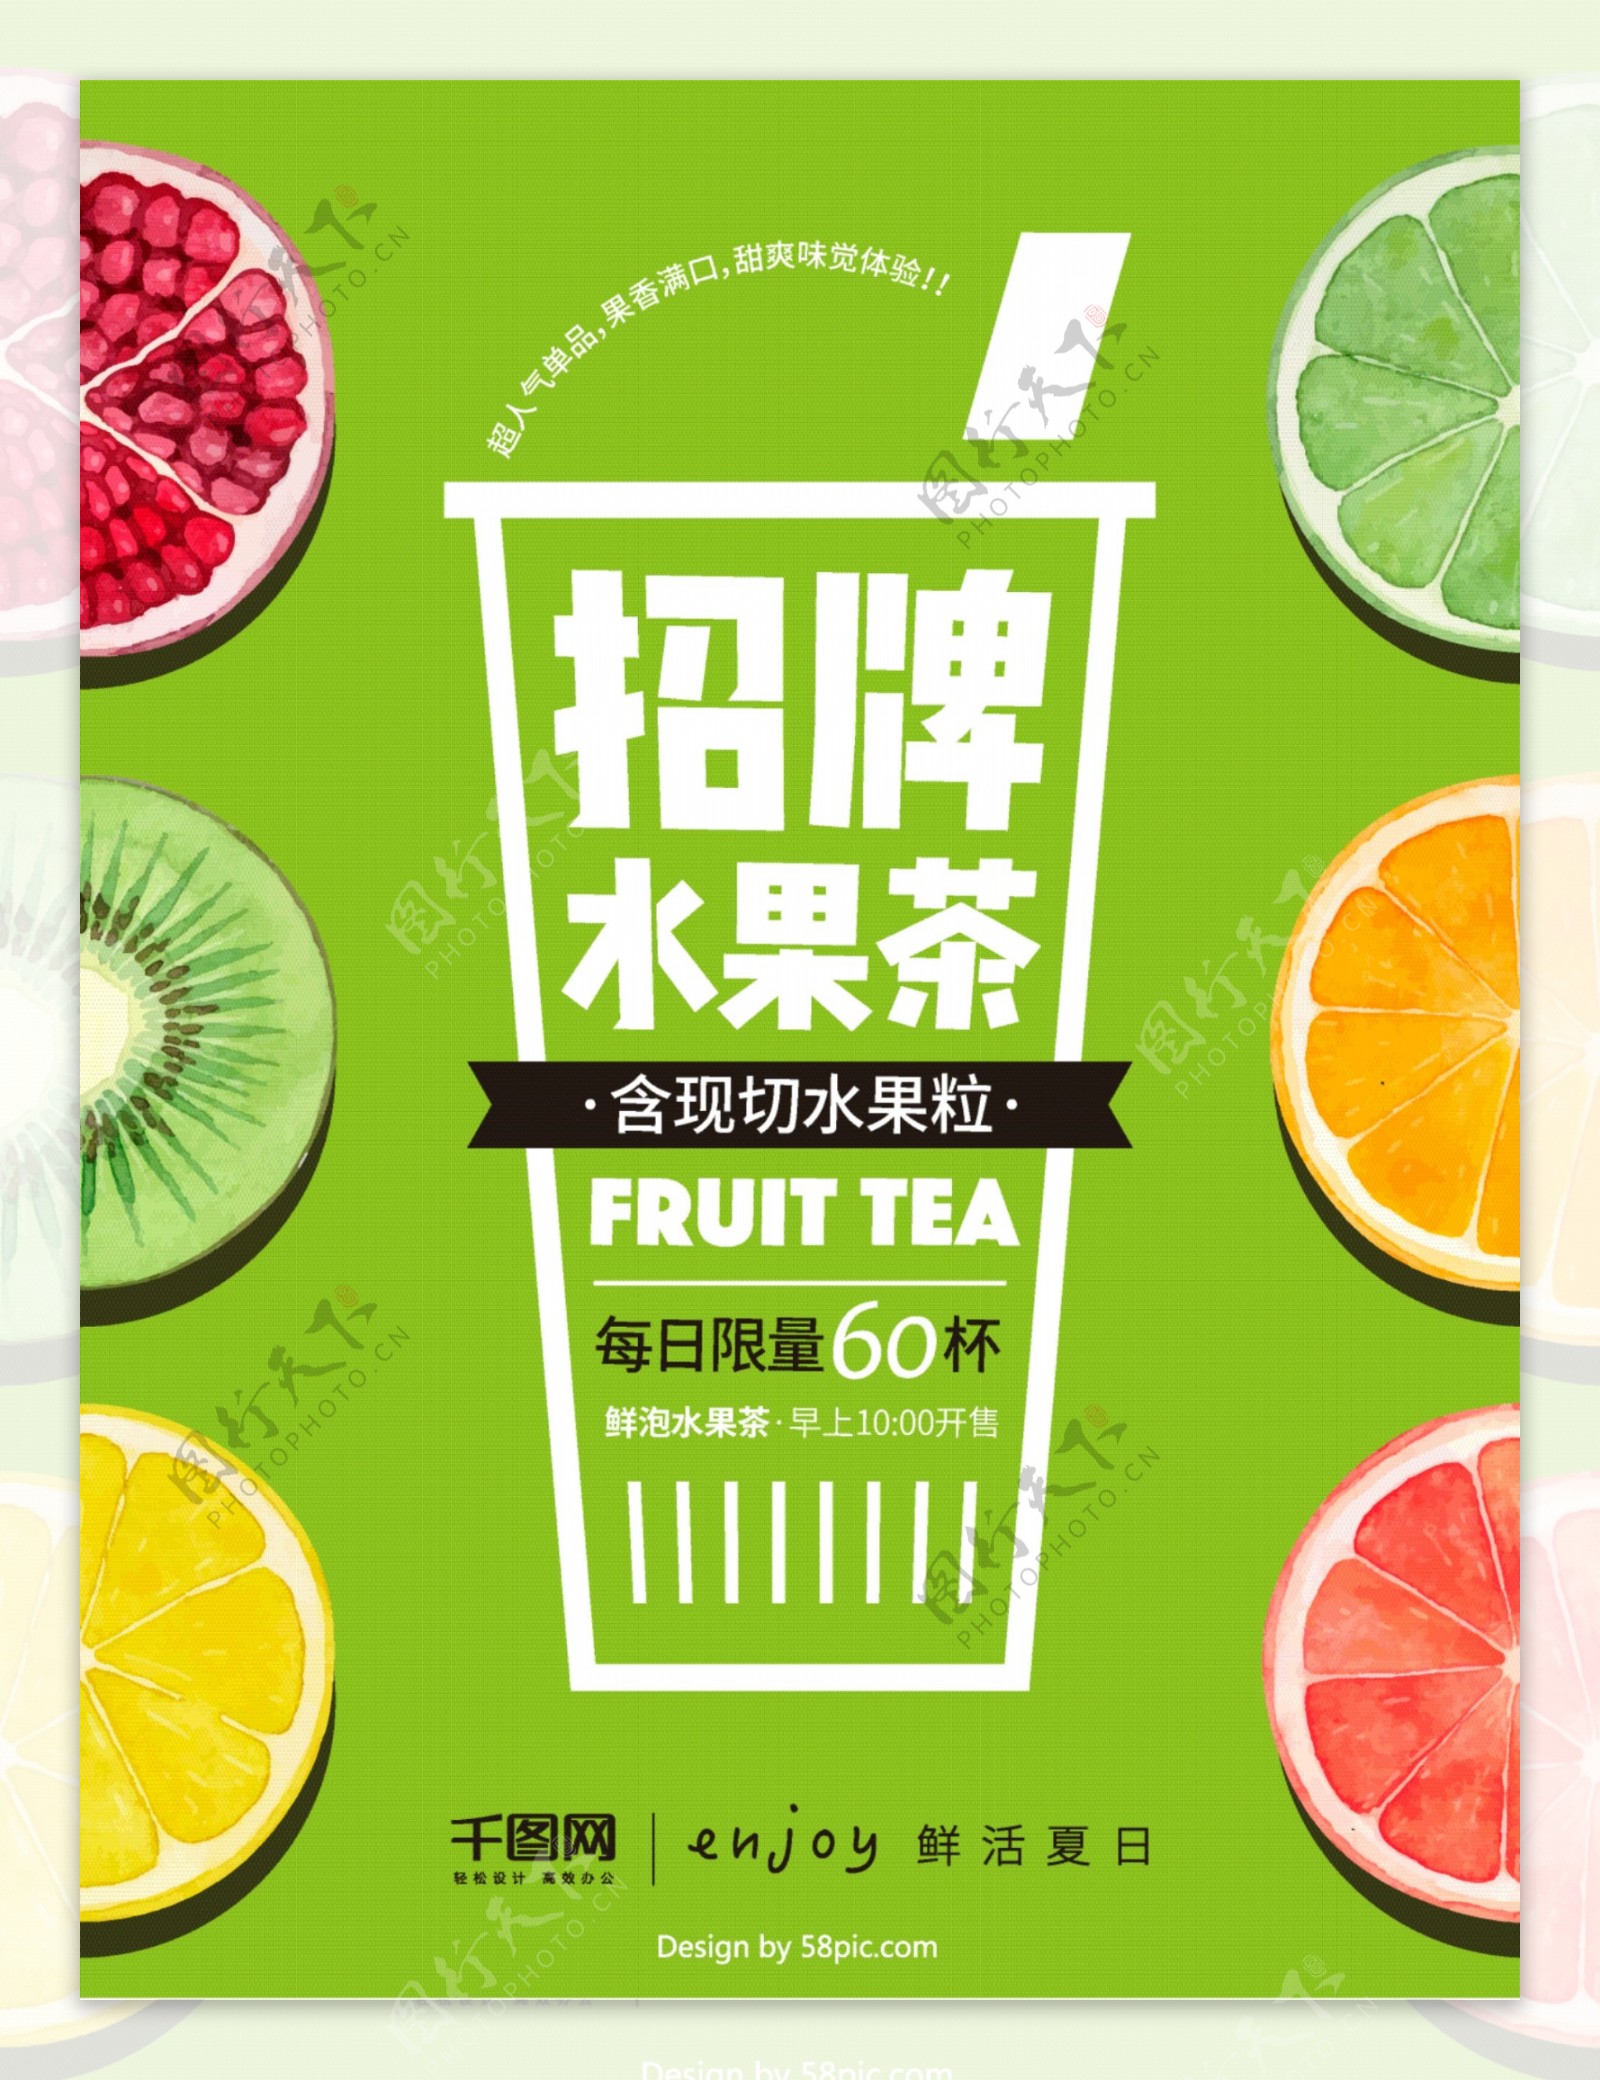 夏日果粒现泡水果茶促销饮品海报